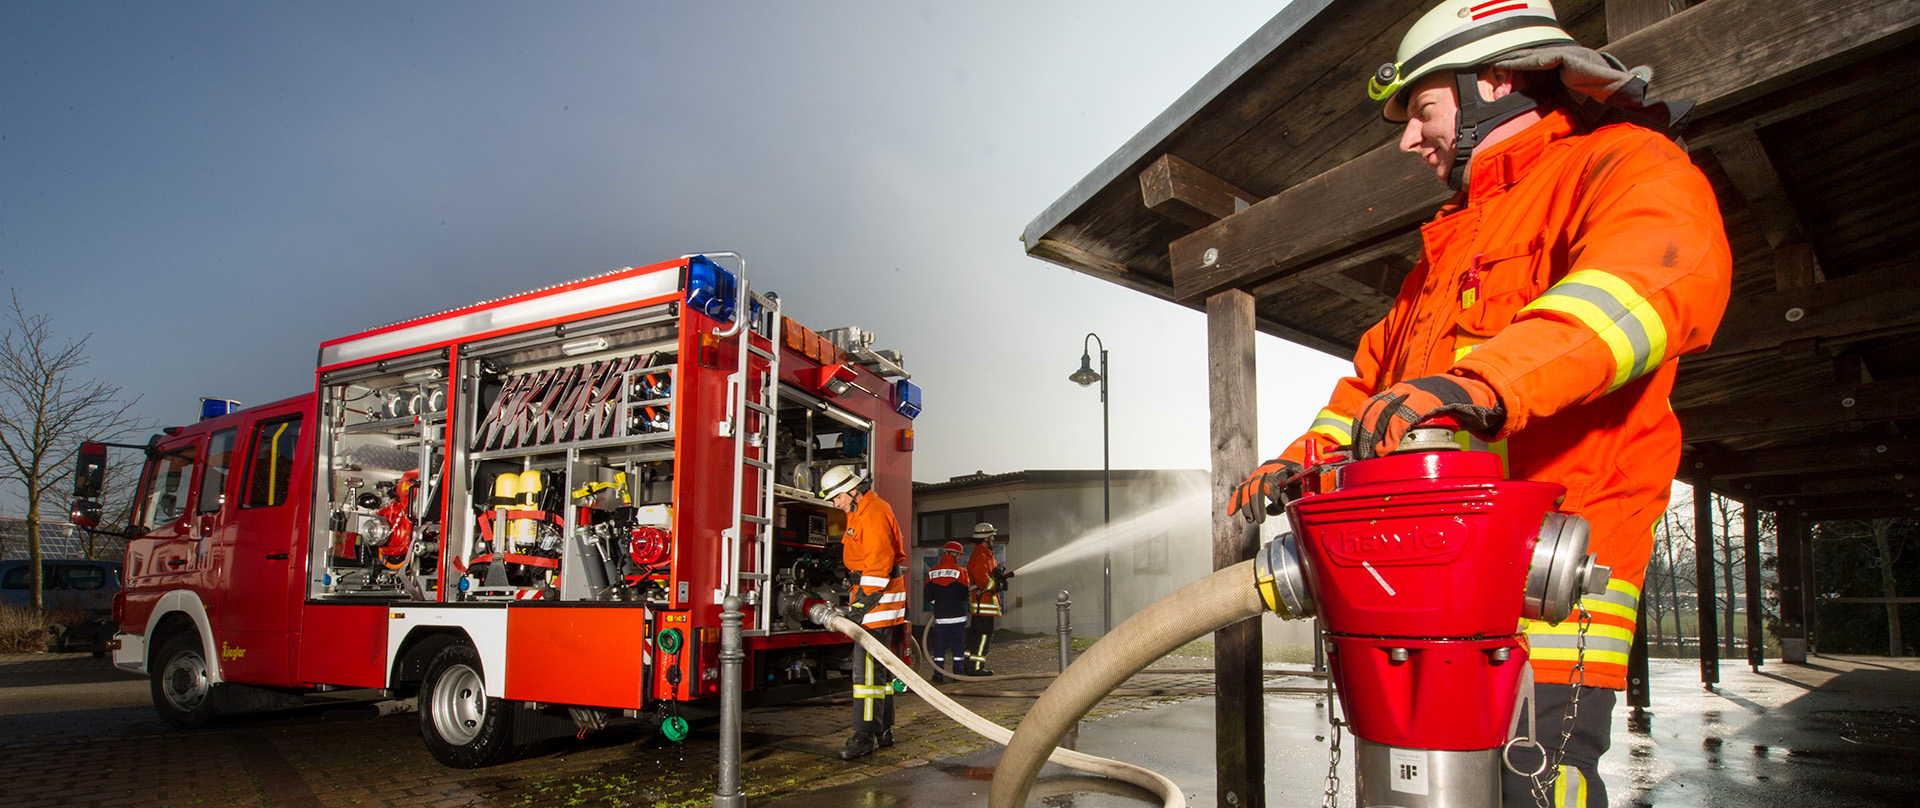  Aufnahme zum Thema Wasserverbrauch - Feuerwehr im Einsatz mit Wasserschlauch